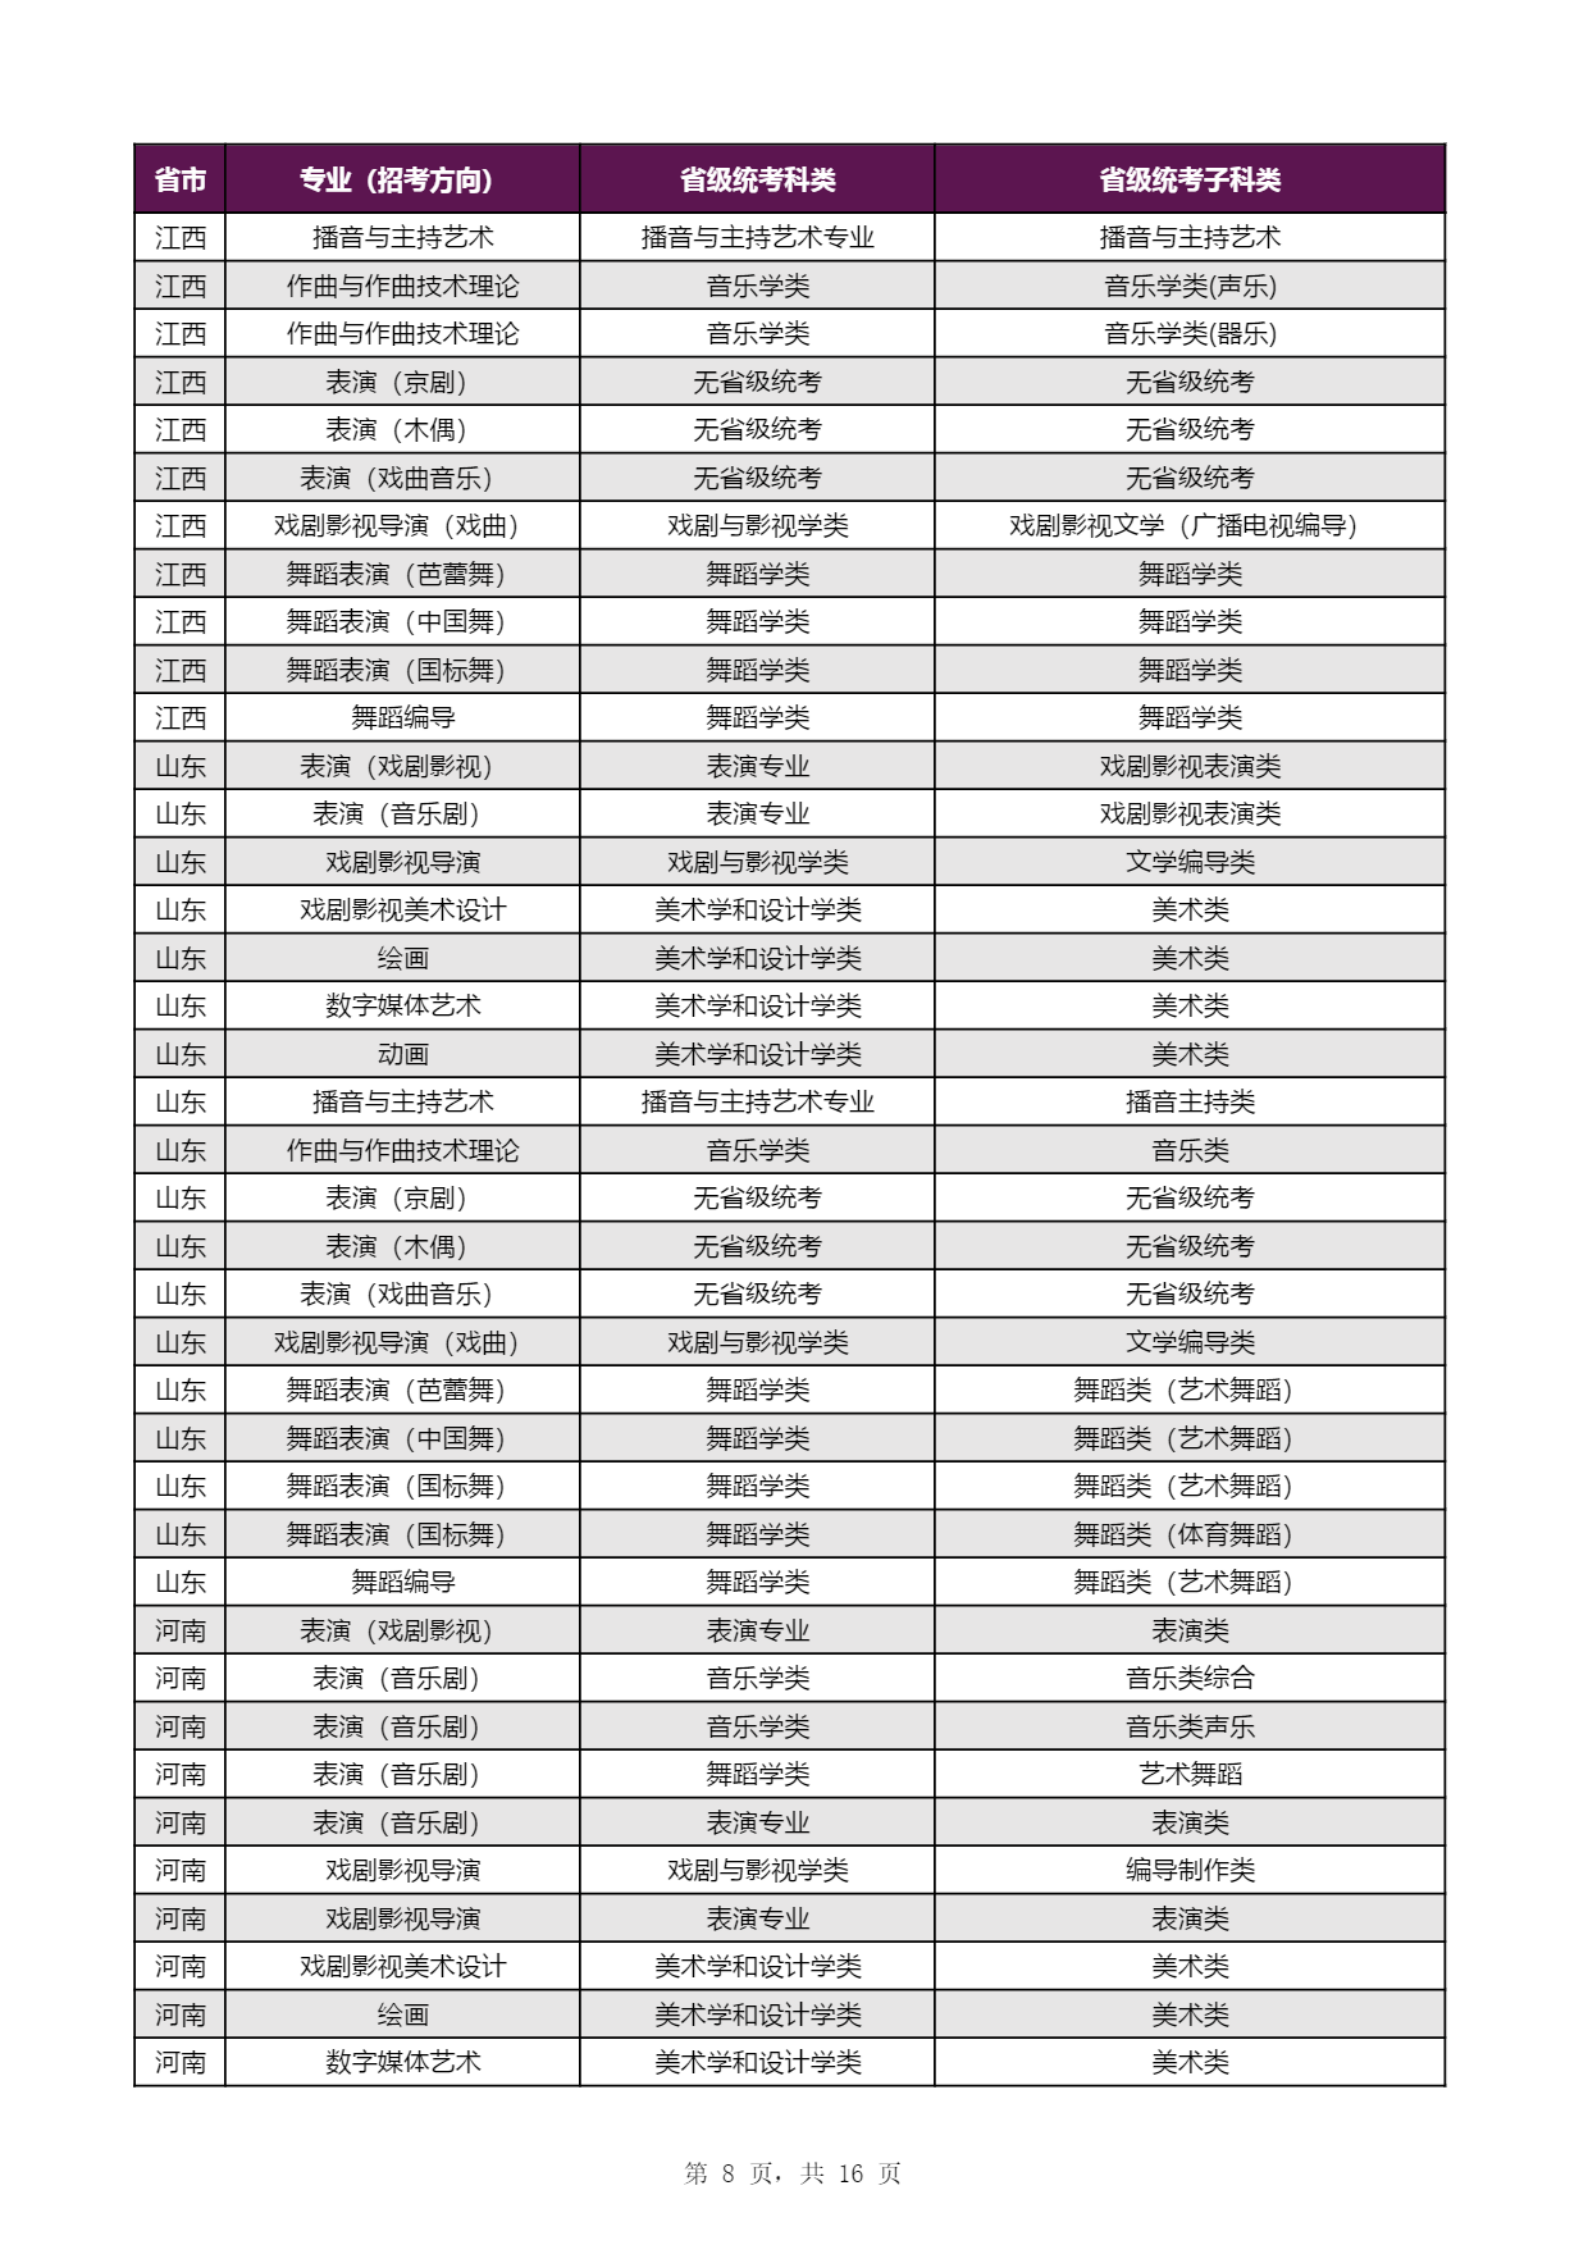 【子科类对应表】上海戏剧学院2023年本科招生专业（招考方向）与各省级统考子科类对应表_07.png